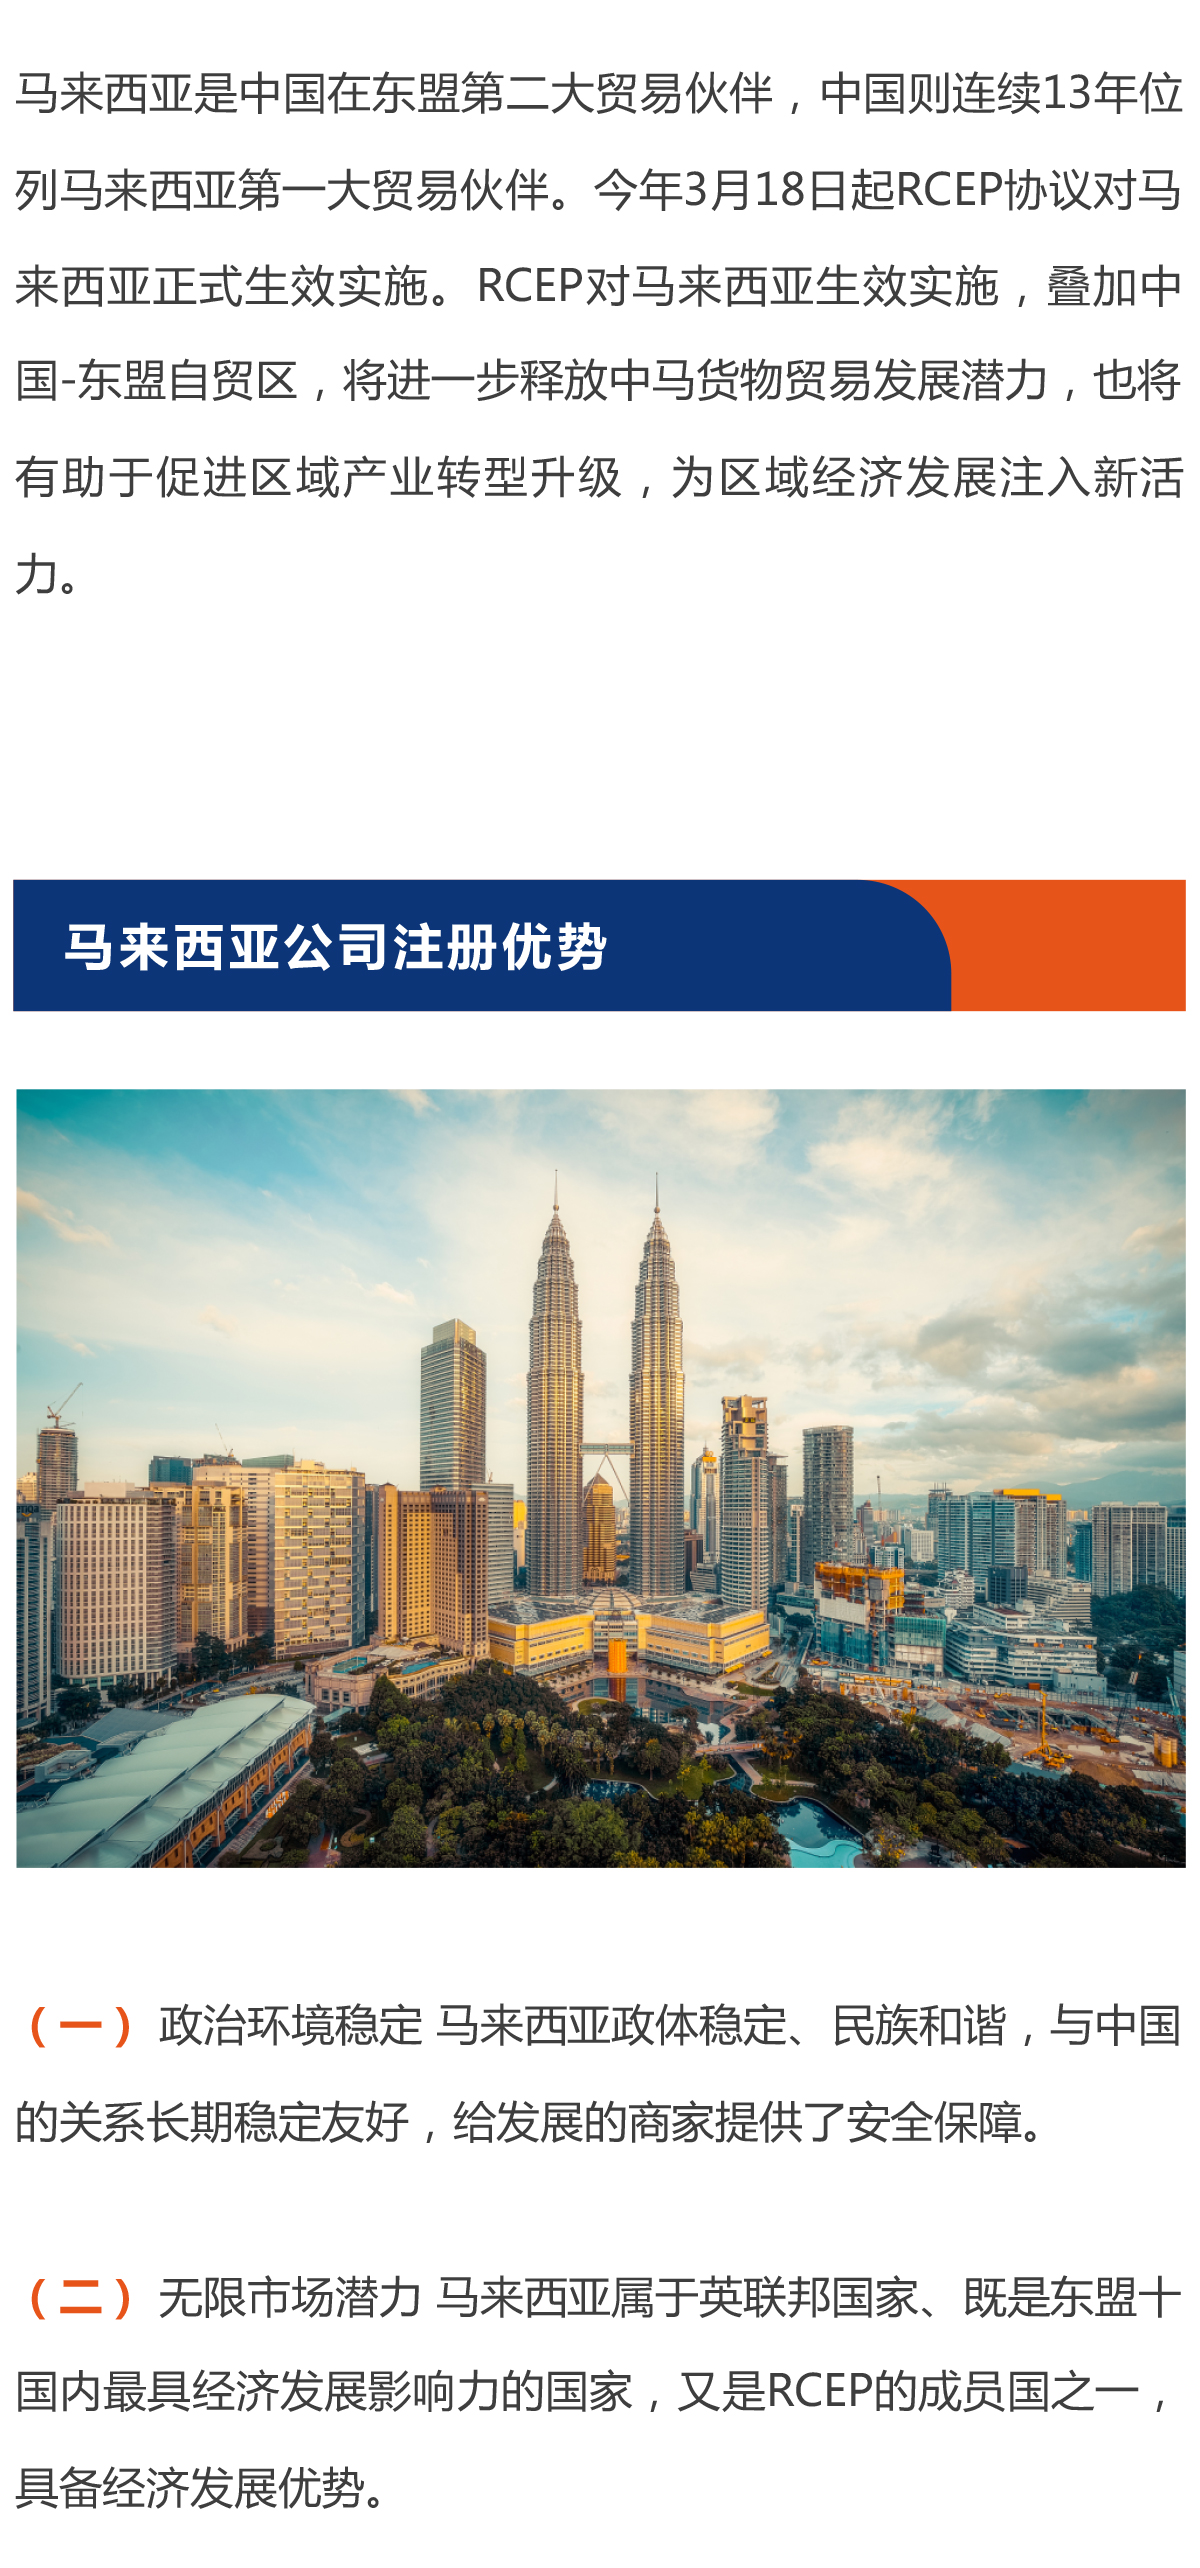 东南亚本土推荐-马来西亚公司注册流程-1_02.jpg